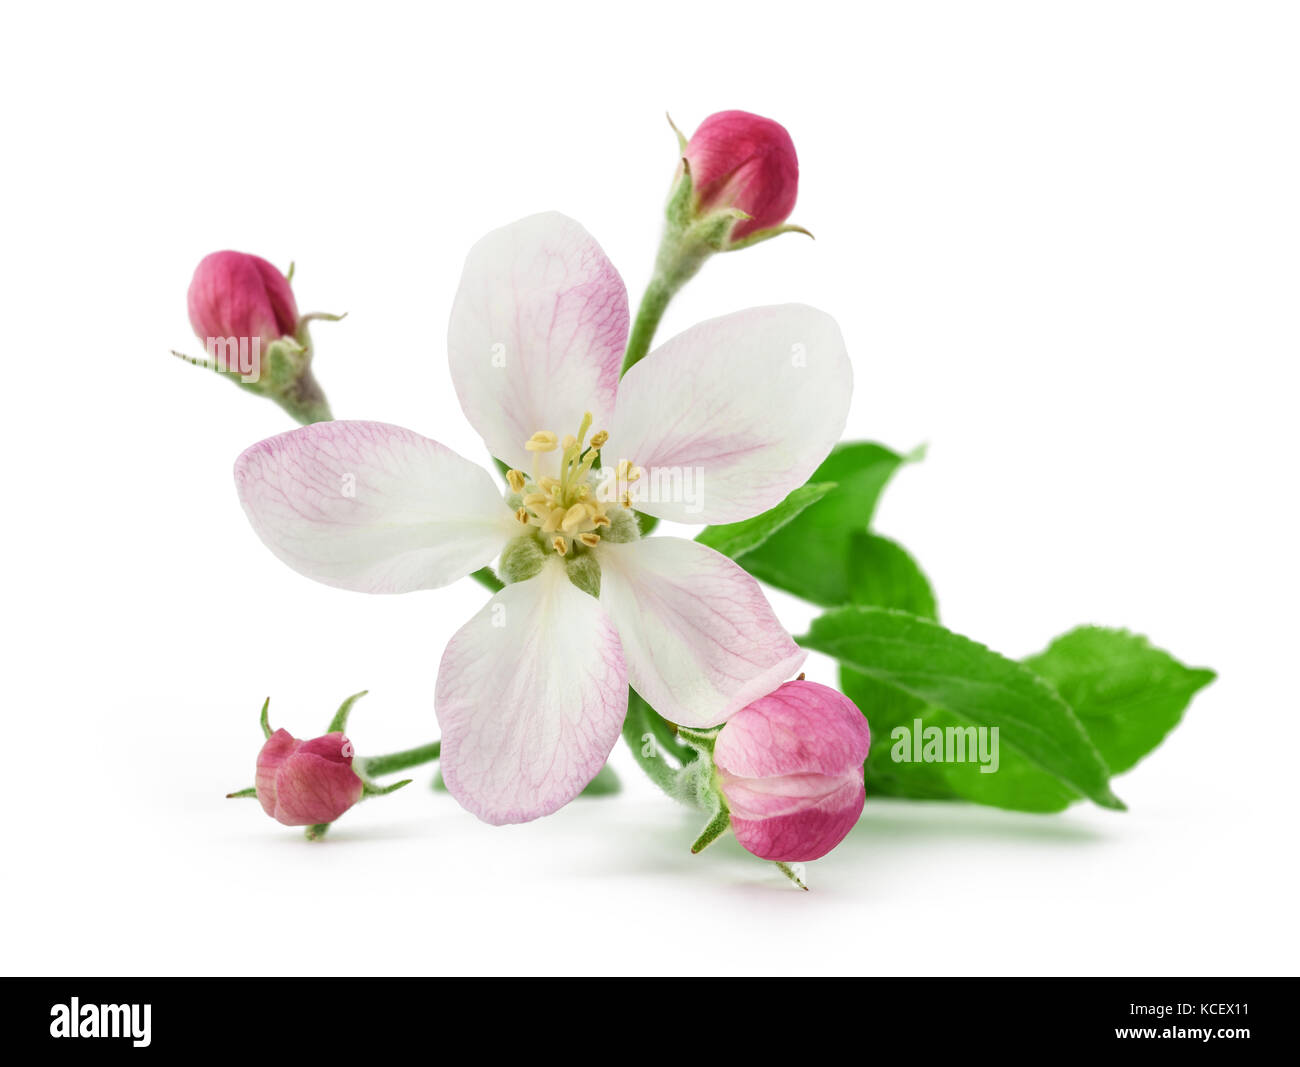 Apple fiore con boccioli isolati su sfondo bianco Foto Stock